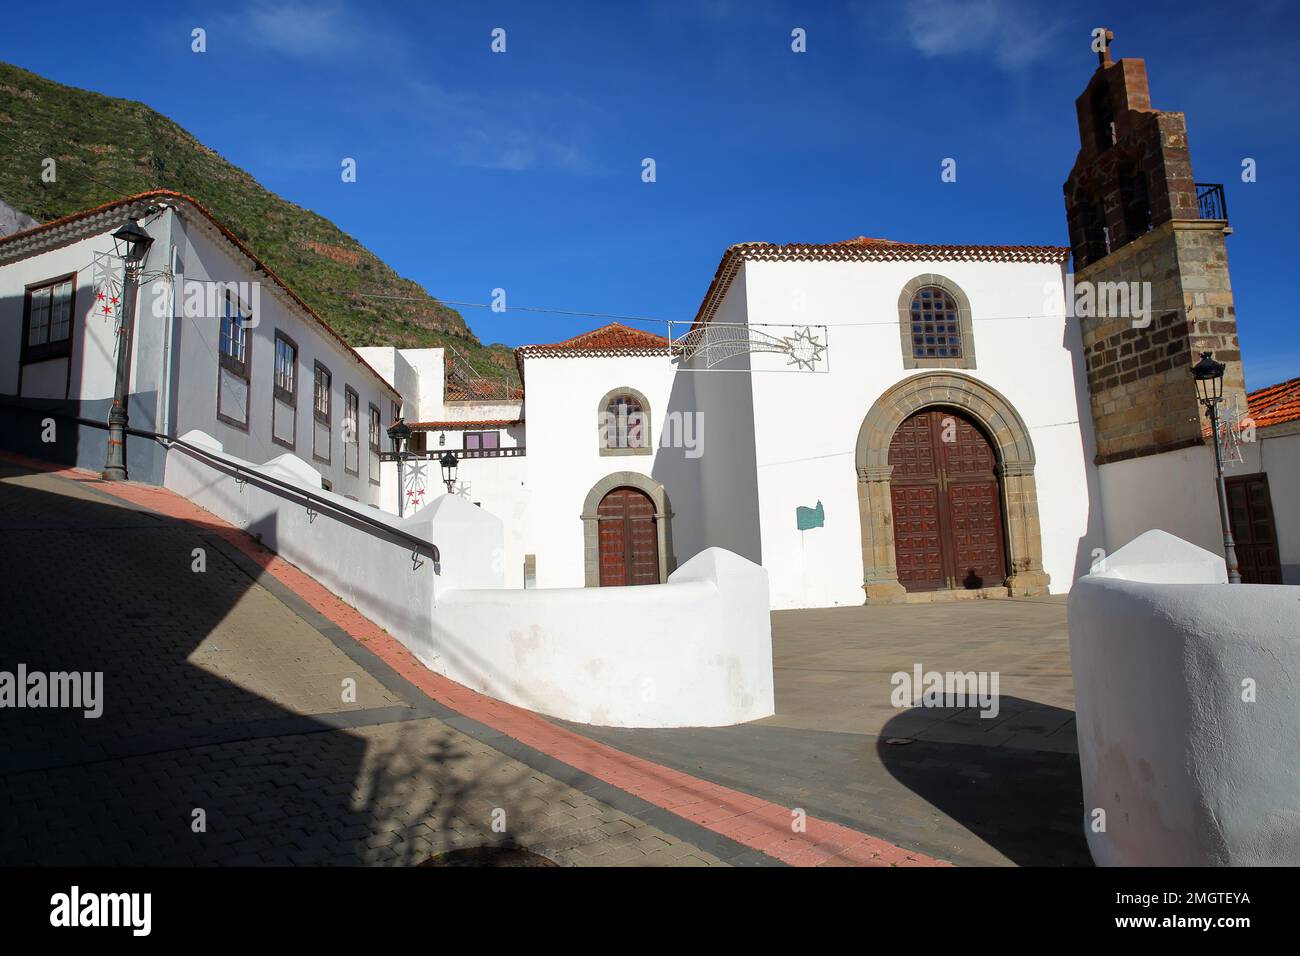 The monastic church of the Dominican monastery (El Convento de Santo Domingo) in Hermigua, La Gomera, Canary Islands, Spain Stock Photo